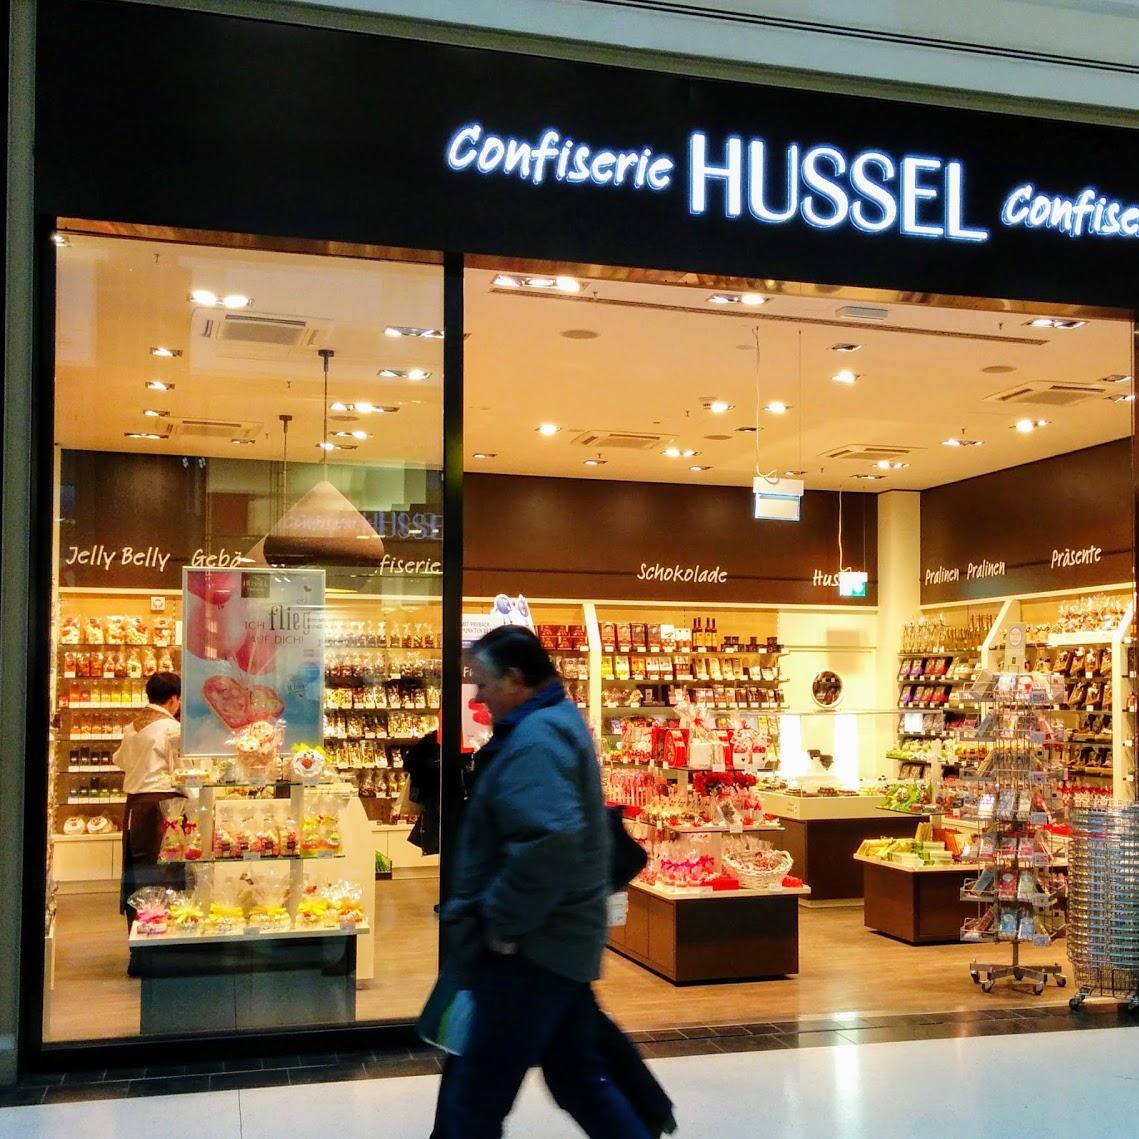 Restaurant "HUSSEL Confiserie" in Berlin